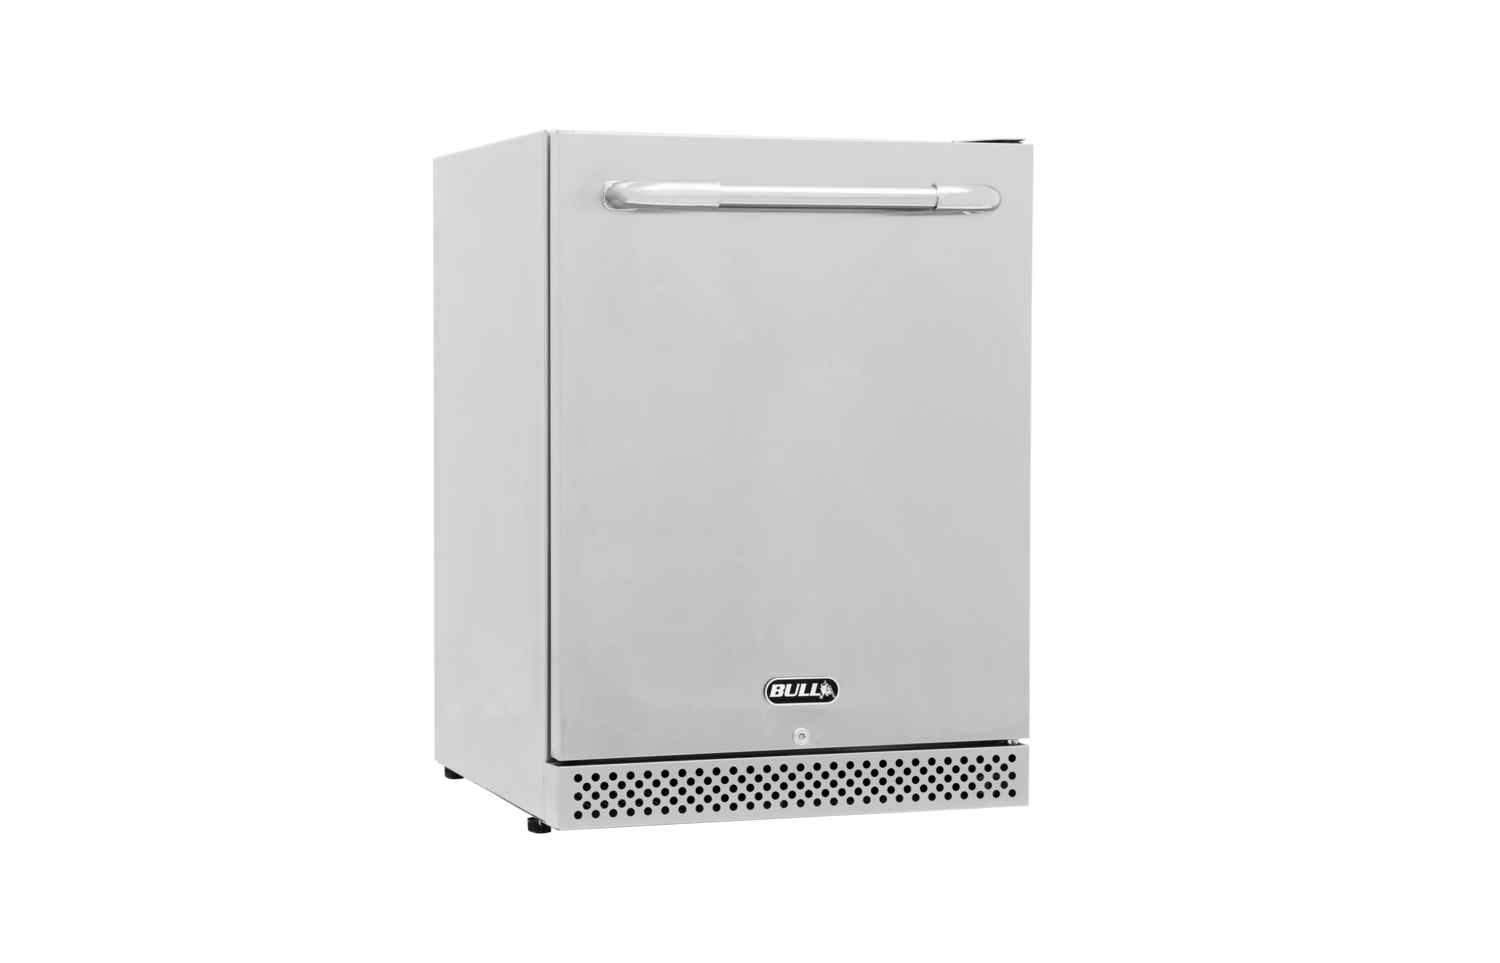 BULL Premium Outdoor Refrigerator Series 2